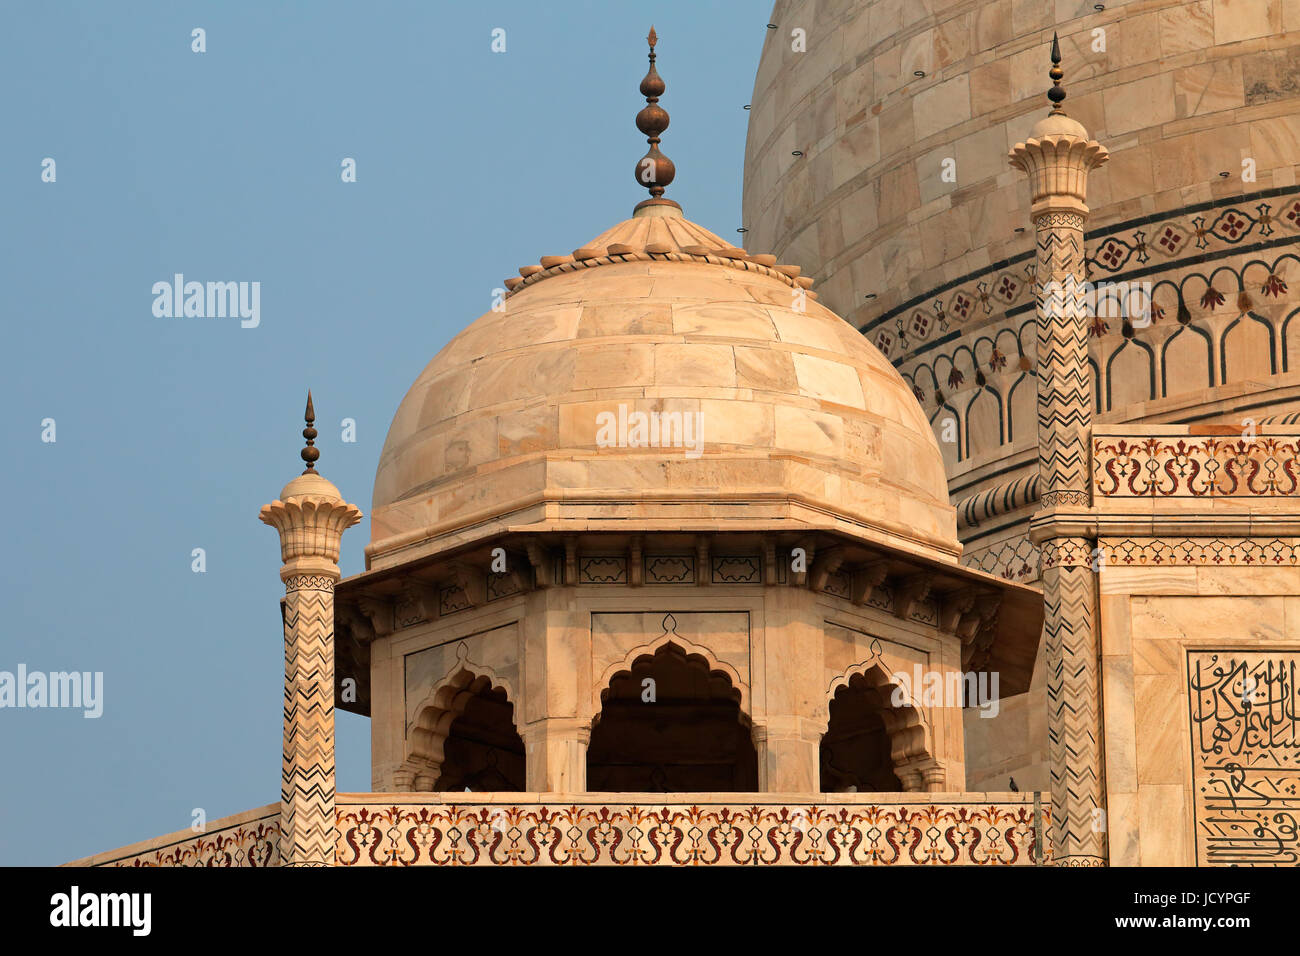 Détail architectural de la célèbre Taj Mahal, Agra, Inde Banque D'Images